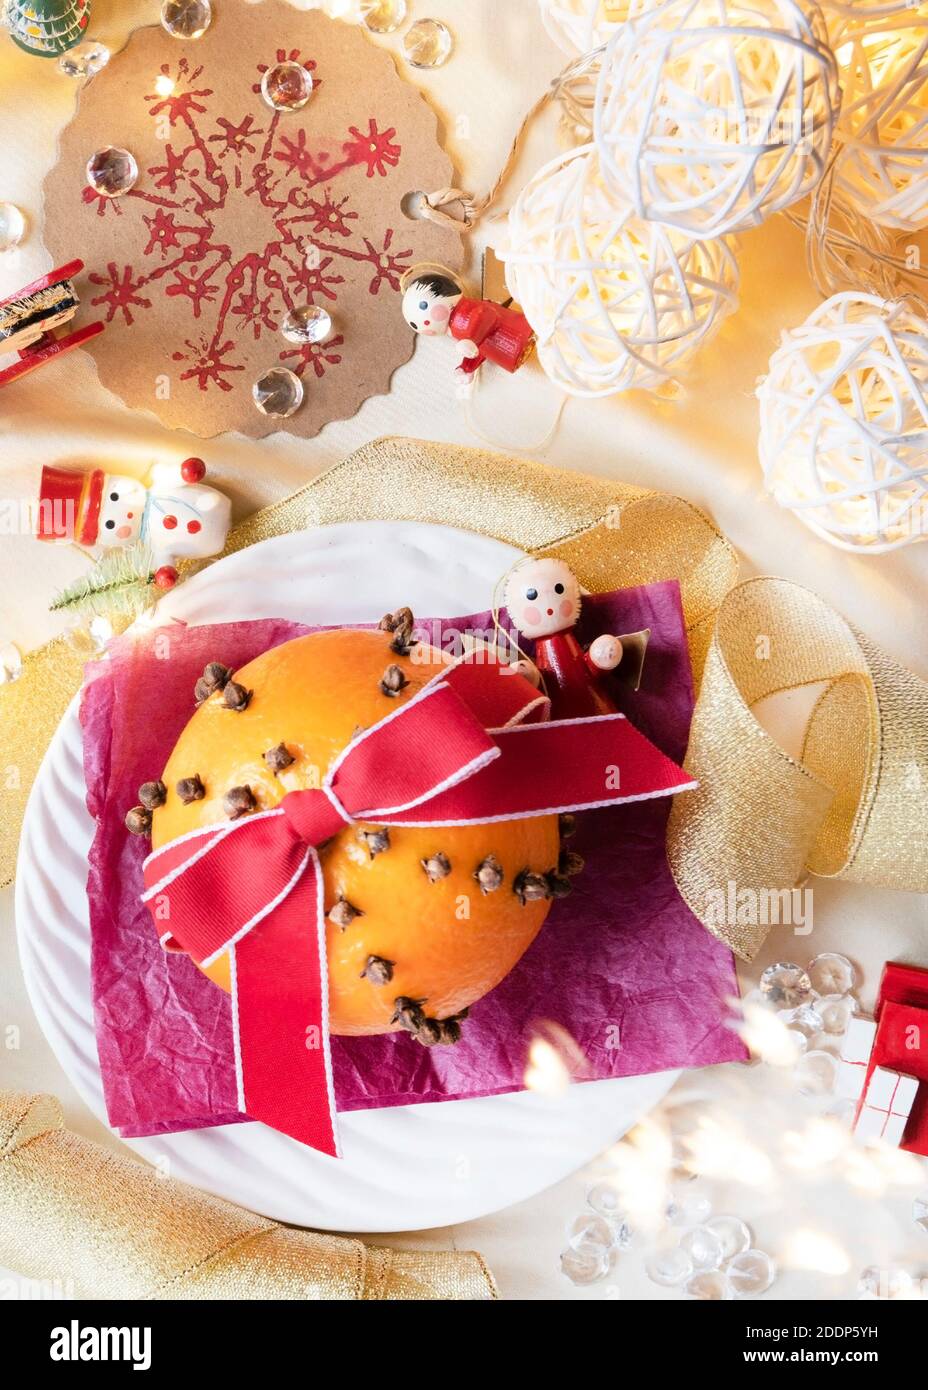 Vertikale Weihnachtsdekoration, aus Orange und Nelken Pomander mit hübschen Lichtern und alten Holz Weihnachtsbaum Finger Raum für Text über legen Stockfoto